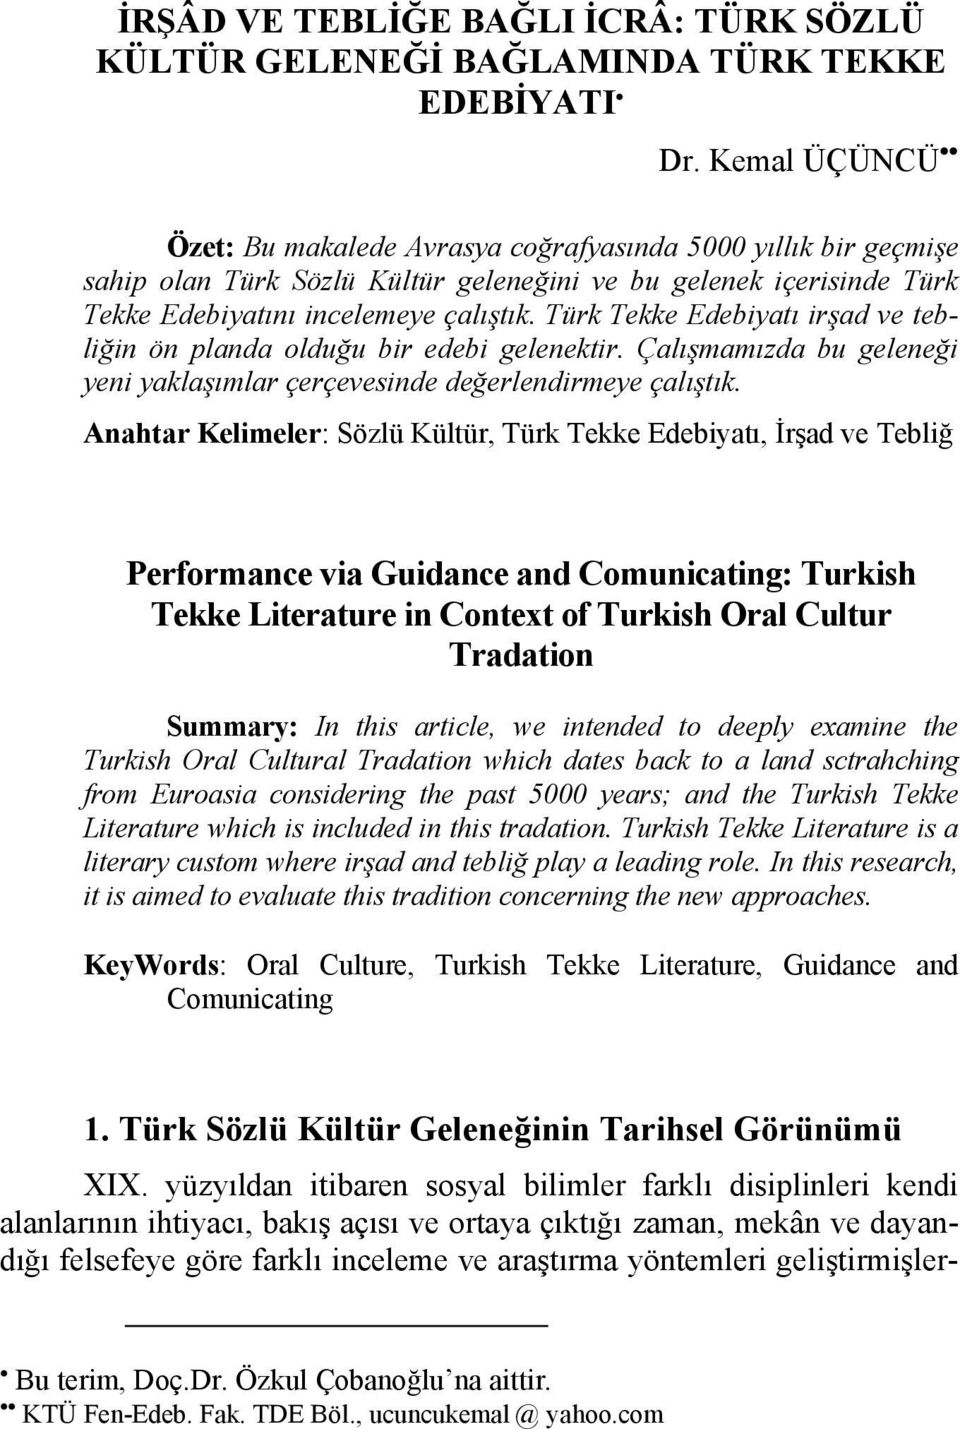 Türk Tekke Edebiyatı irşad ve tebliğin ön planda olduğu bir edebi gelenektir. Çalışmamızda bu geleneği yeni yaklaşımlar çerçevesinde değerlendirmeye çalıştık.